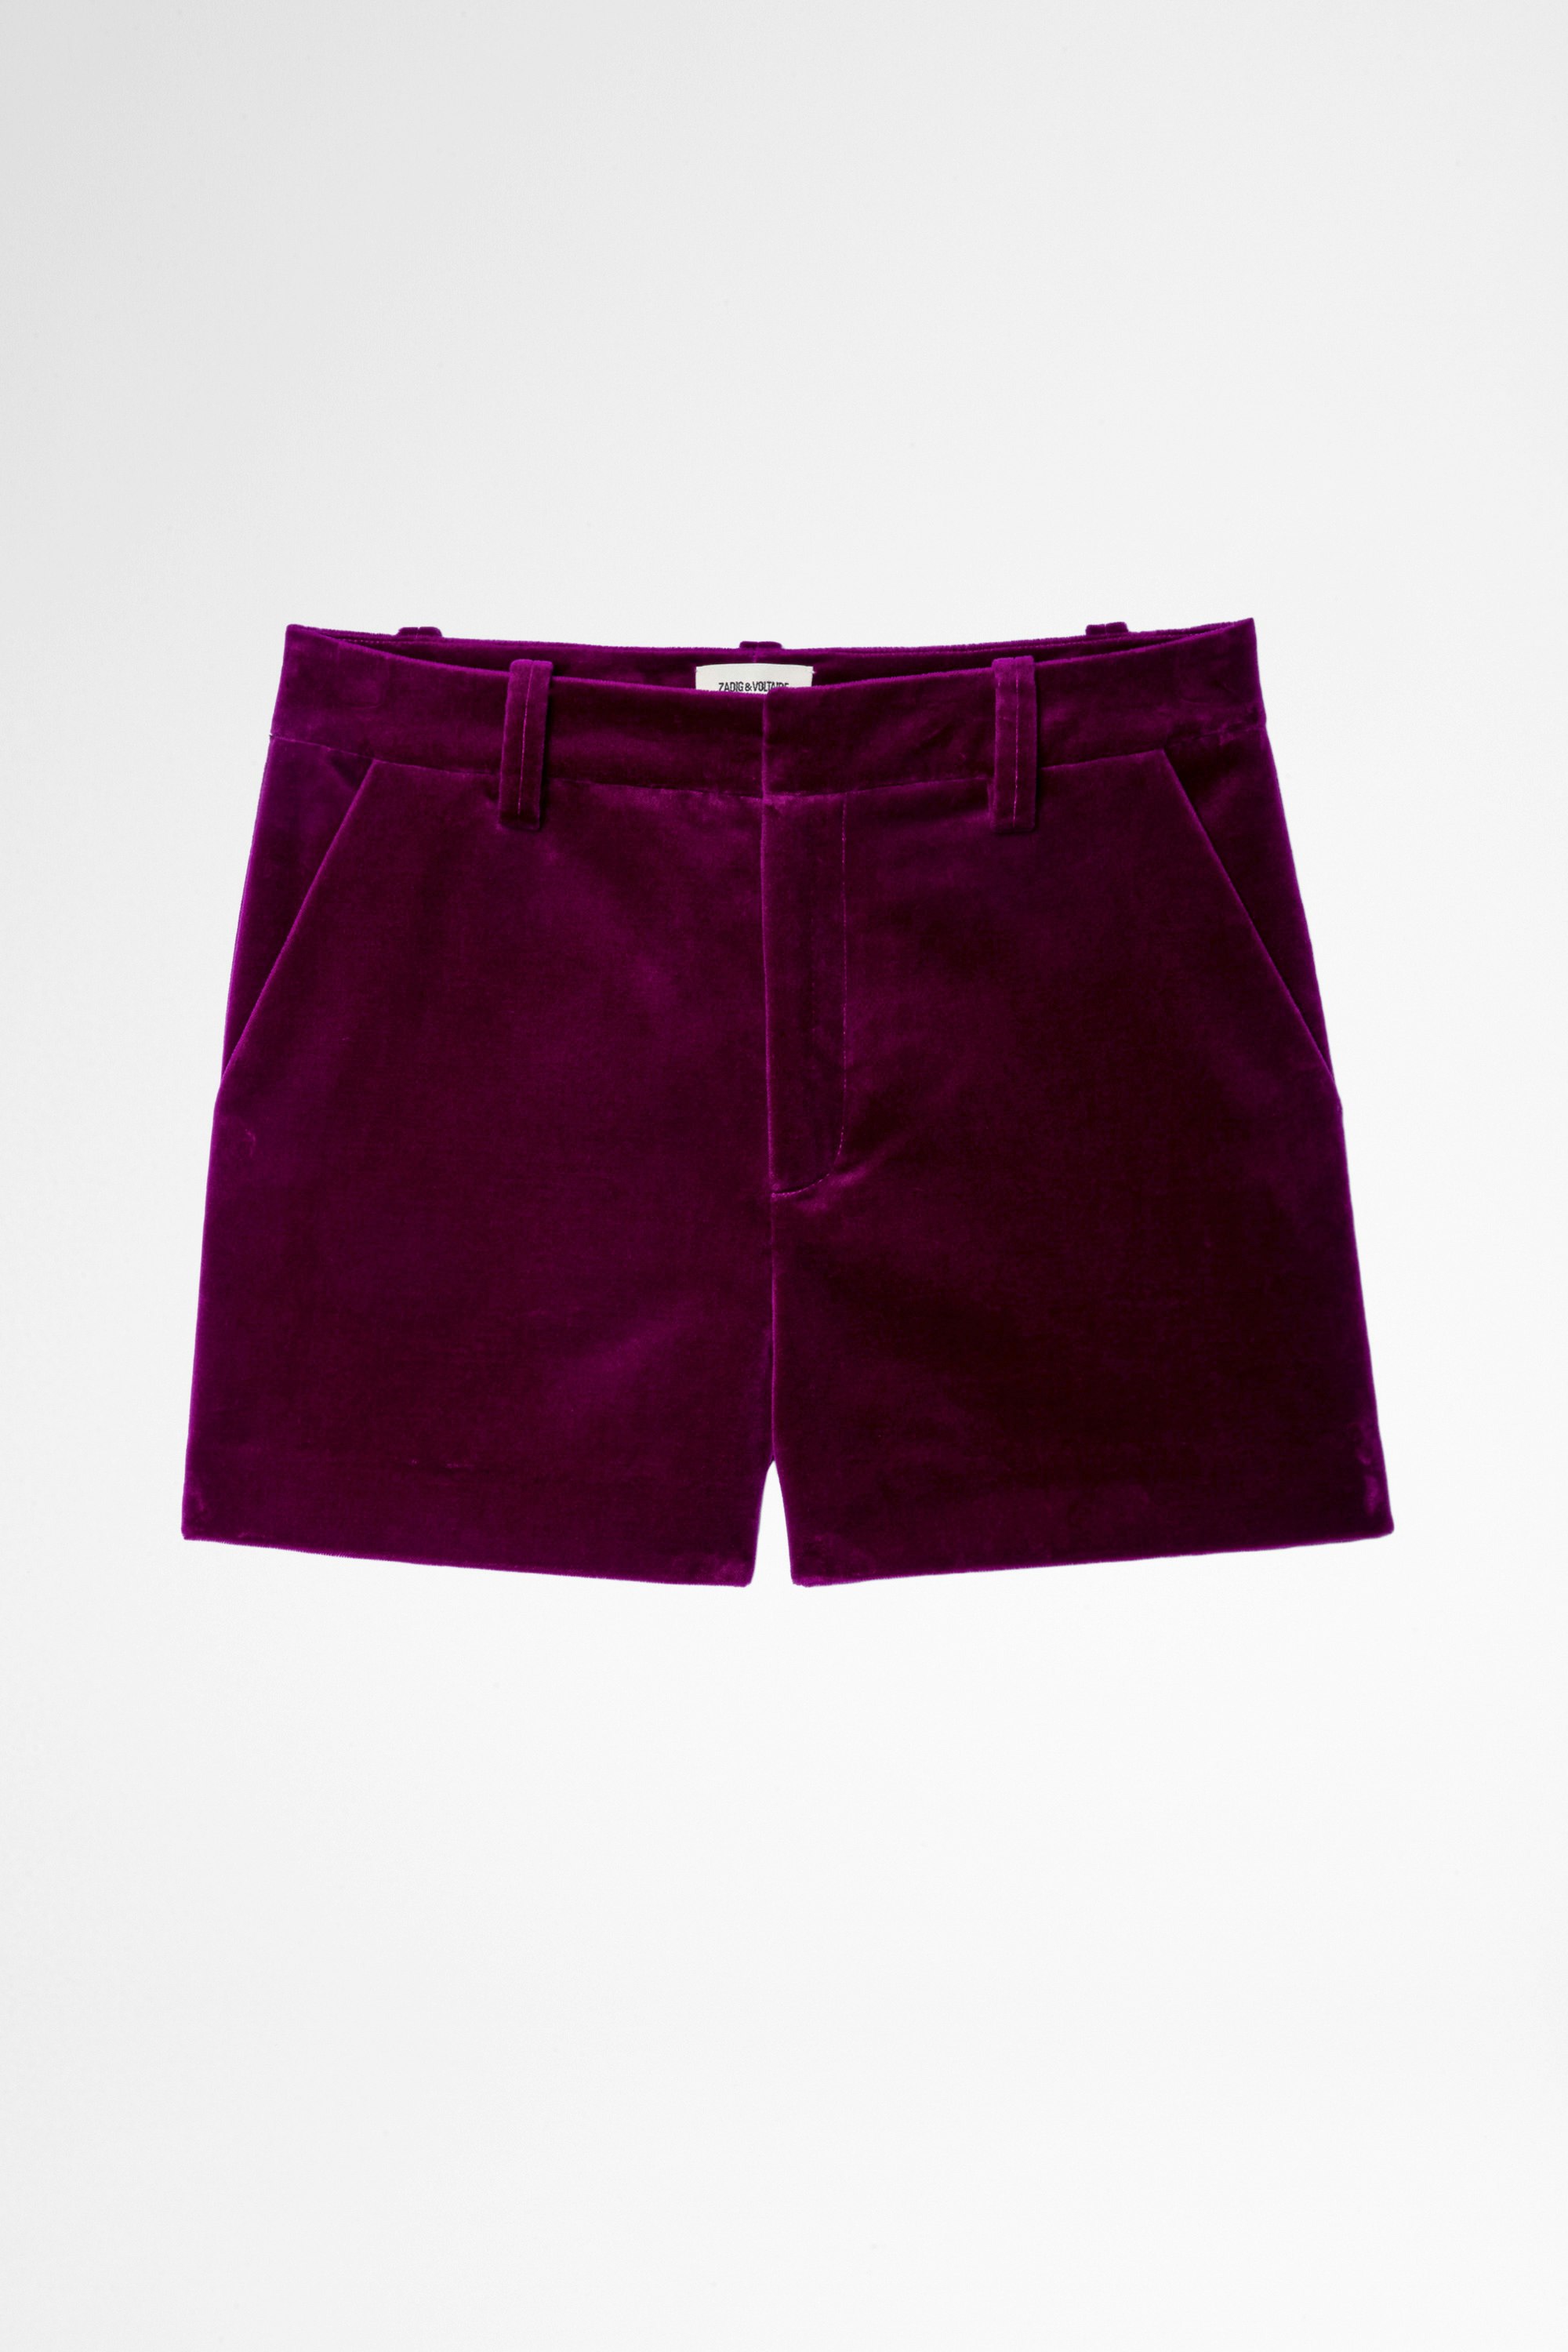 Pink Velvet Shorts Women's velvet shorts in pink